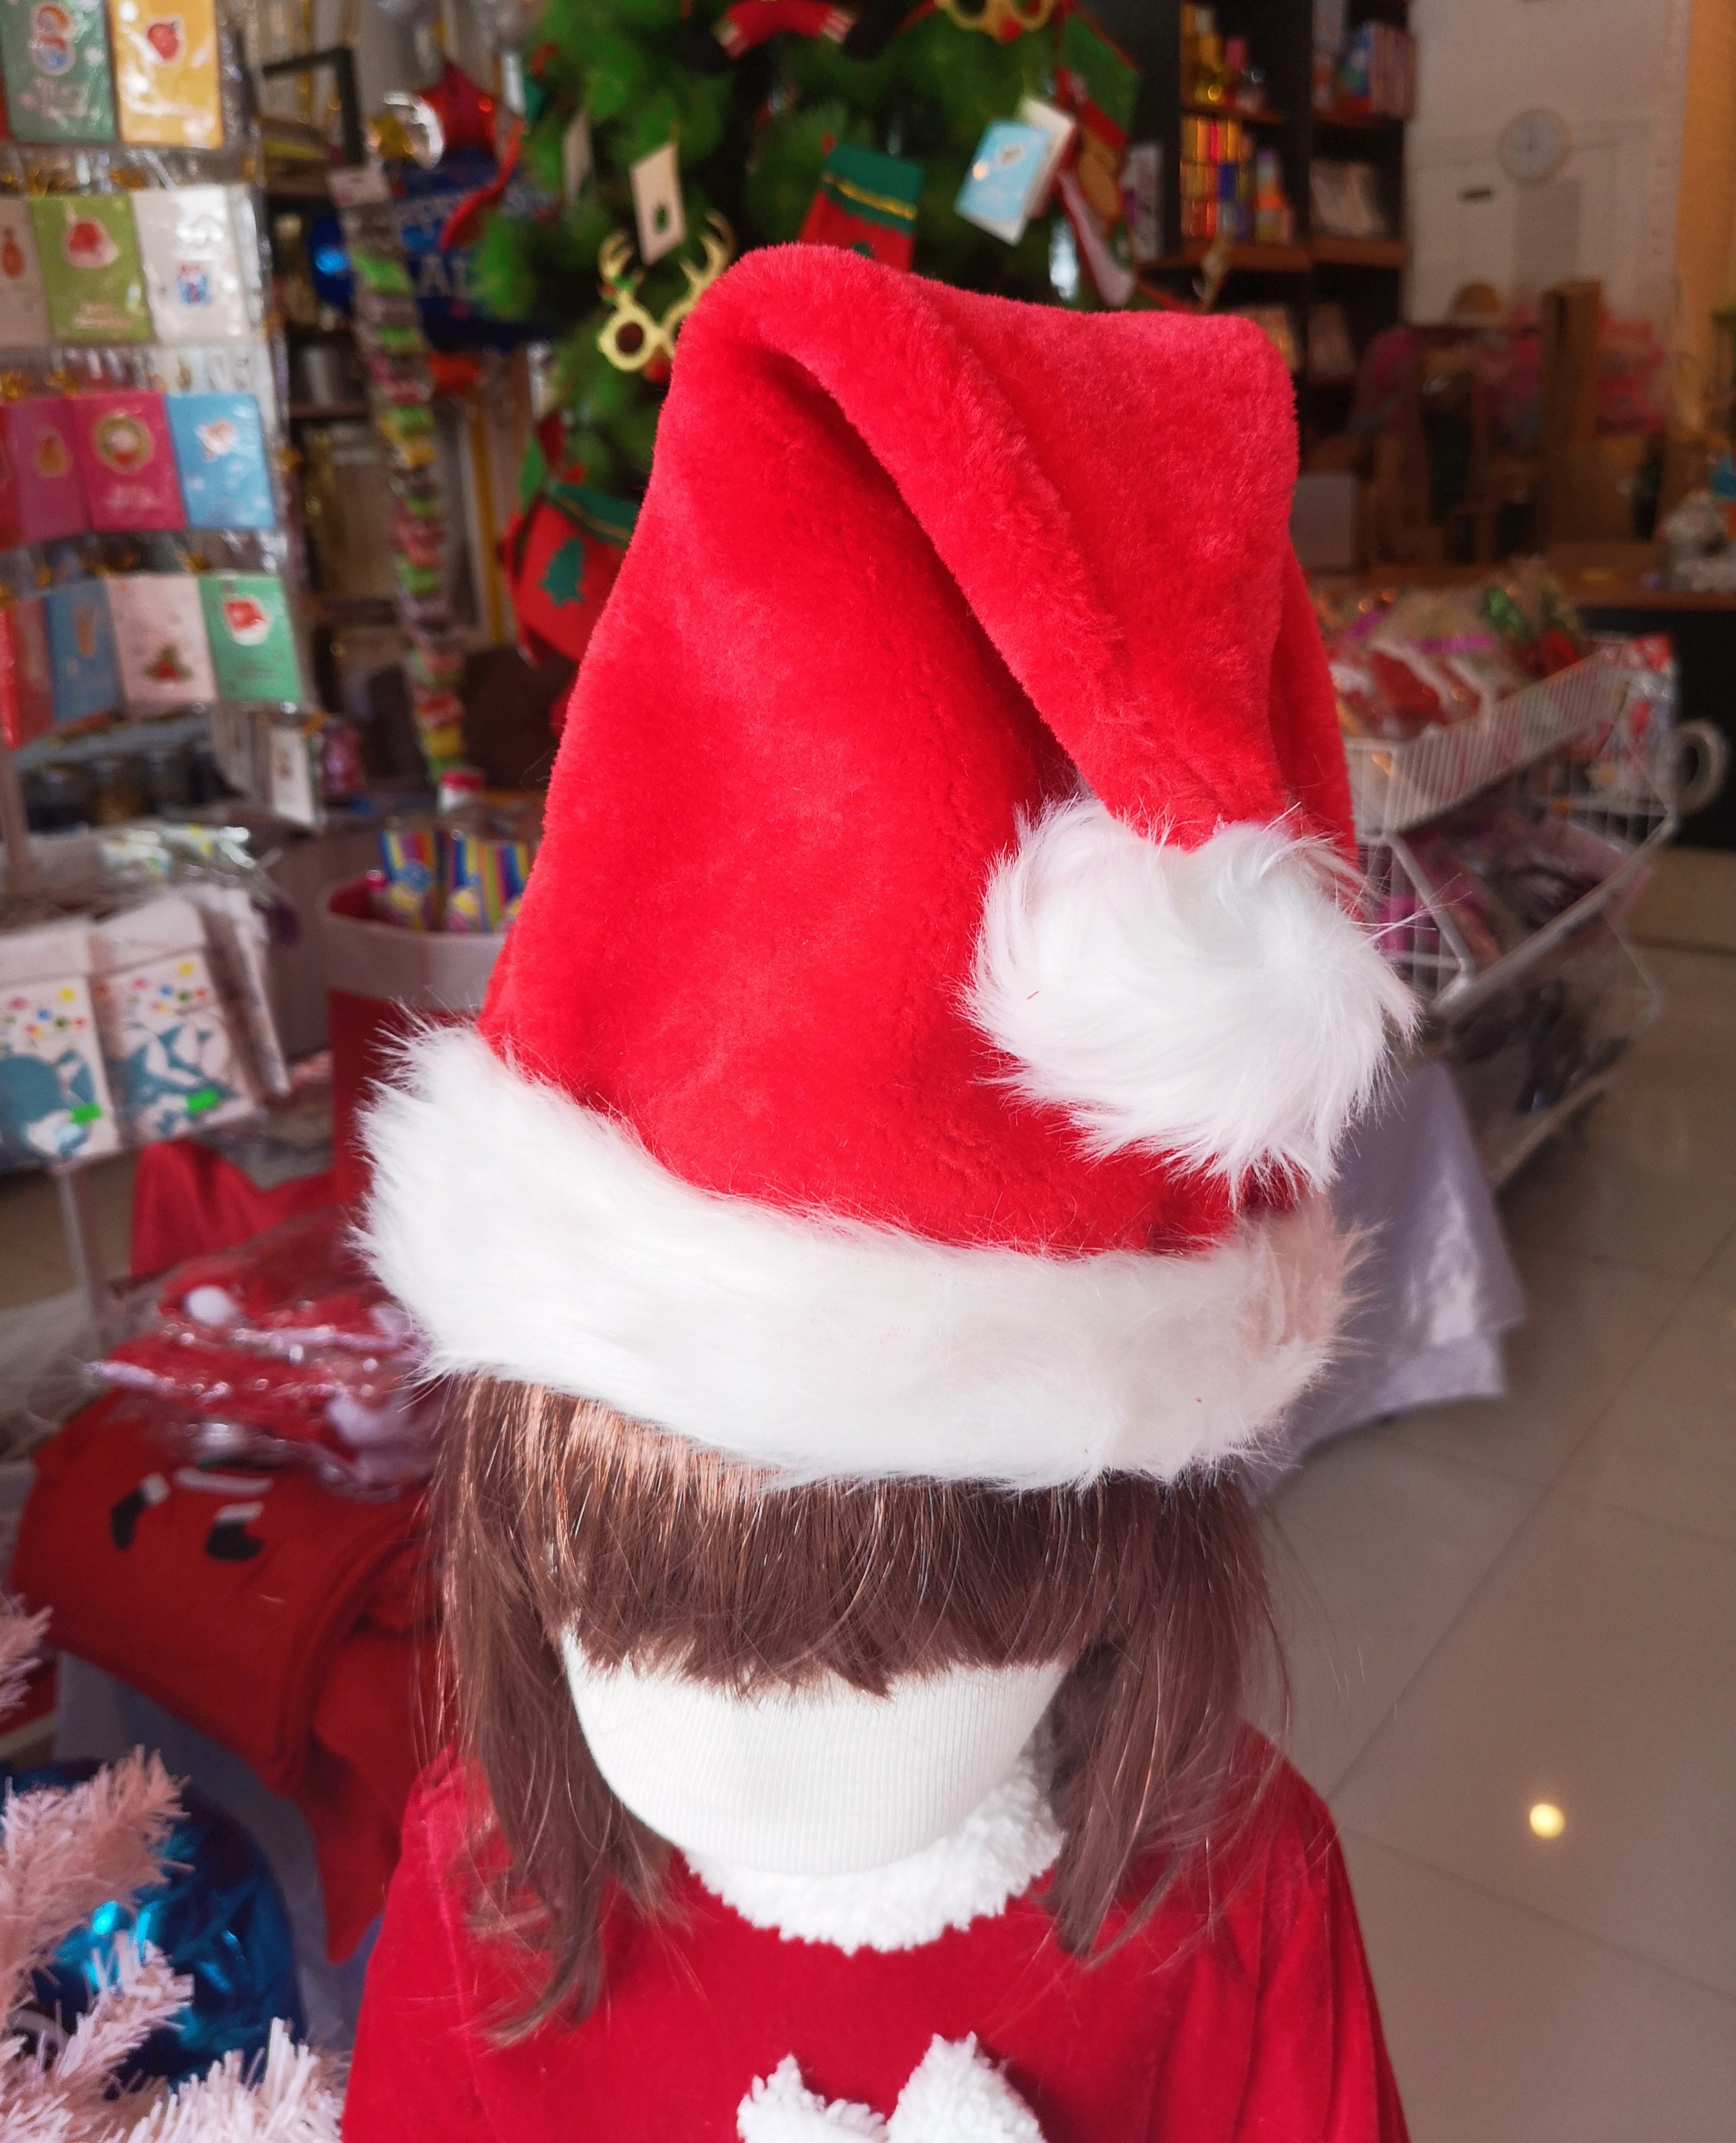 หมวกซานต้า หมวกแซนตี้ หมวกคริสมาส หมวกซานตาครอส หมวก ซานต้า ซาตตาครอส ซานต้า คริสมาส แบบตกแต่งด้วยขน  CHRISTMAS SANTA SANTY HAT